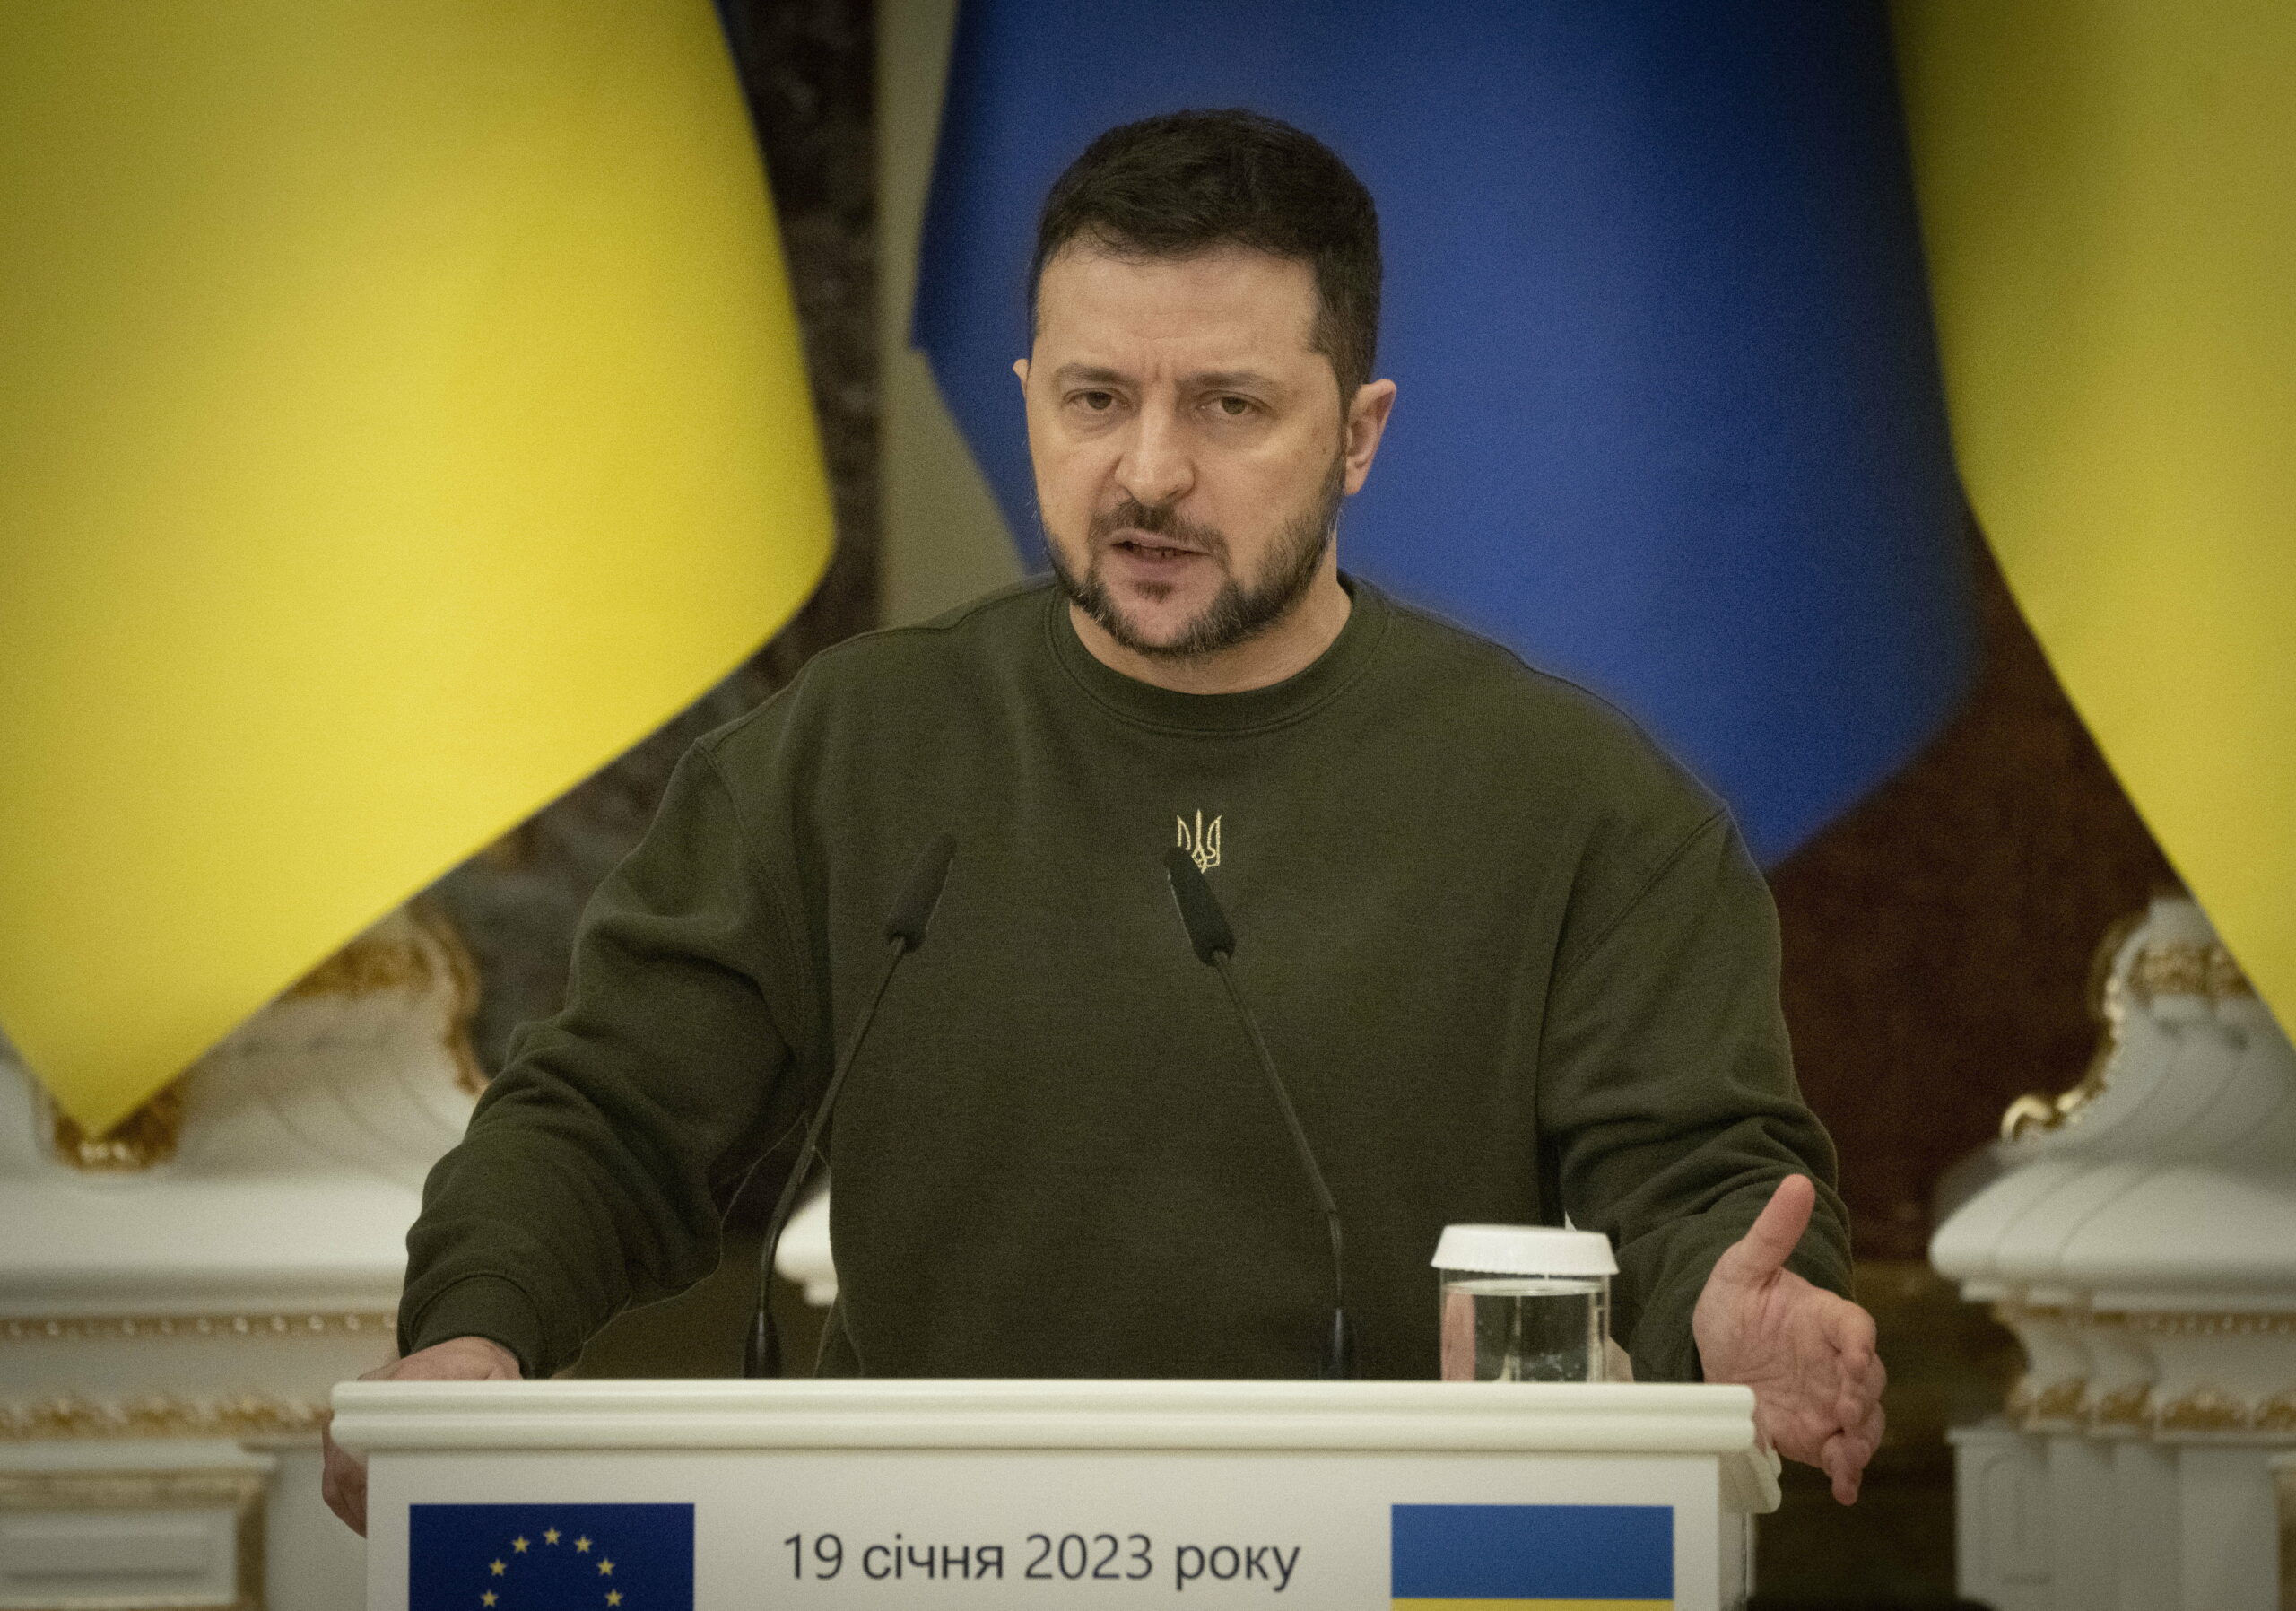 Το σκάνδαλο διαφθοράς στην Ουκρανία κερδίζει δυναμική: παραιτούνται επίσης ο αναπληρωτής επικεφαλής του προεδρικού γραφείου και ο αναπληρωτής υπουργός Άμυνας